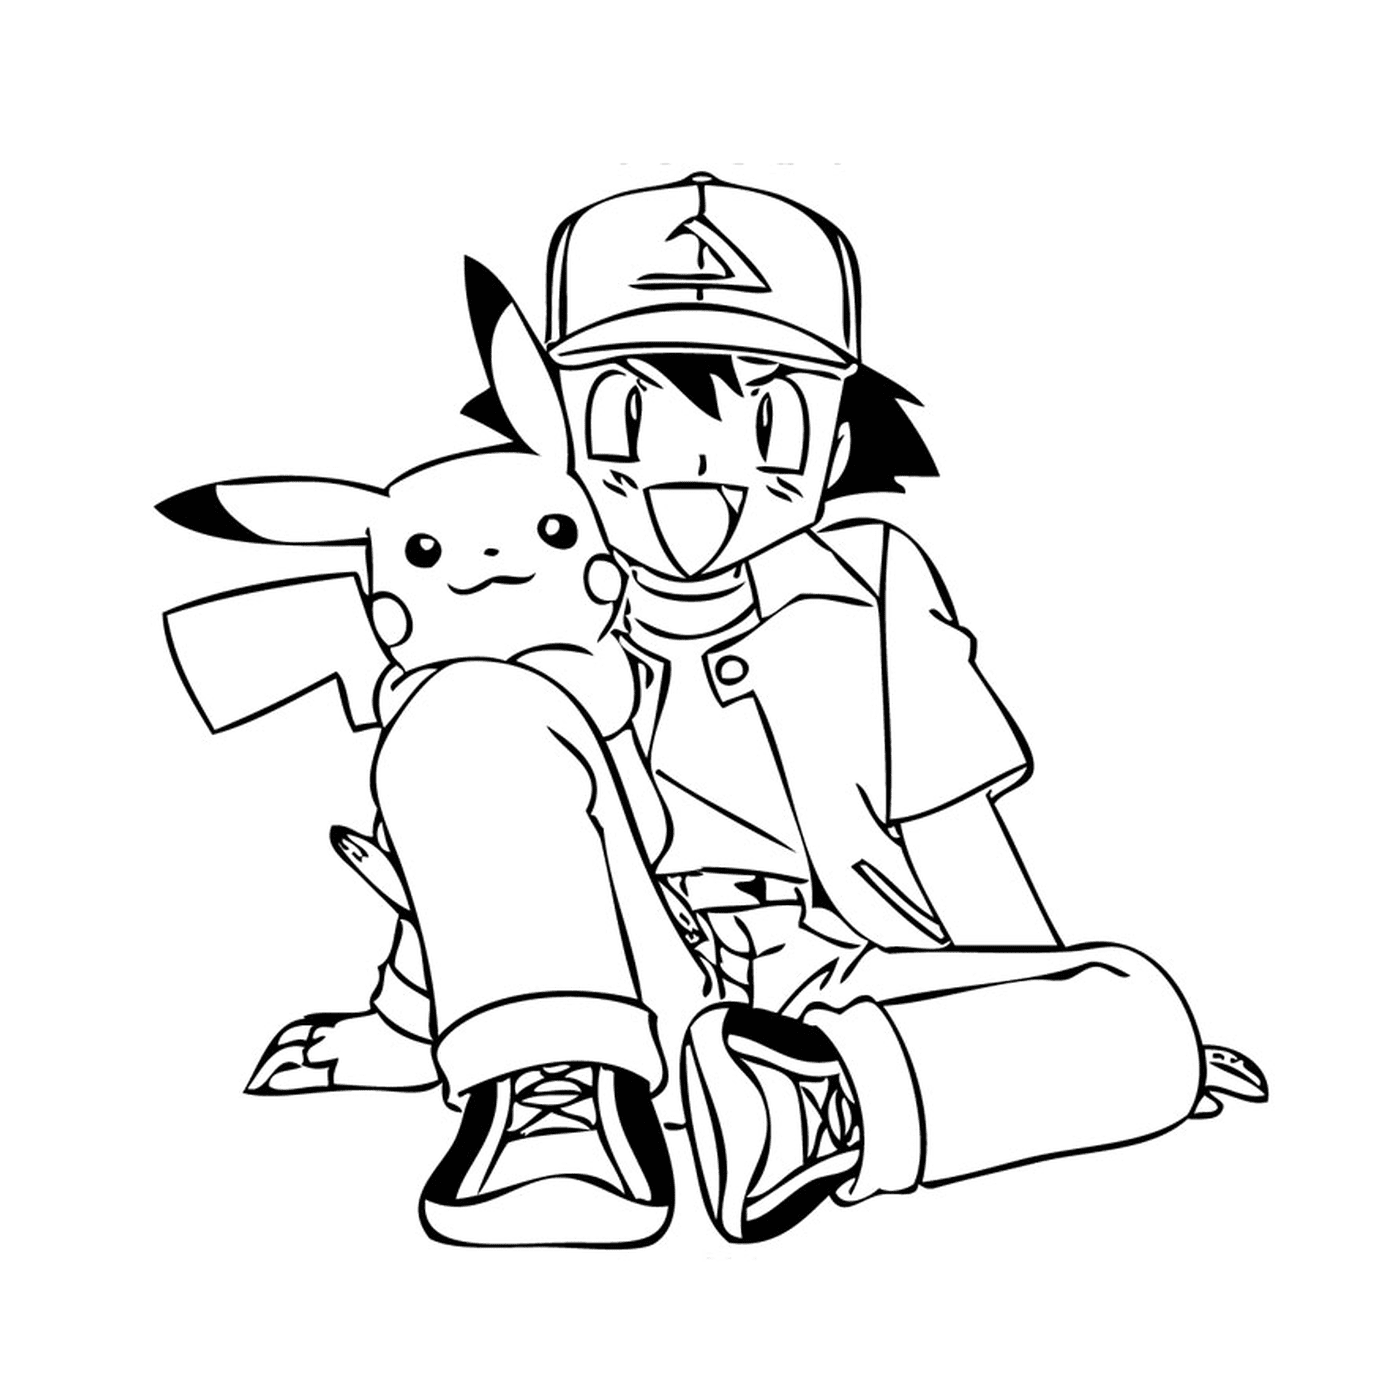  Eine Person, die mit einem Pikachu auf dem Boden sitzt 